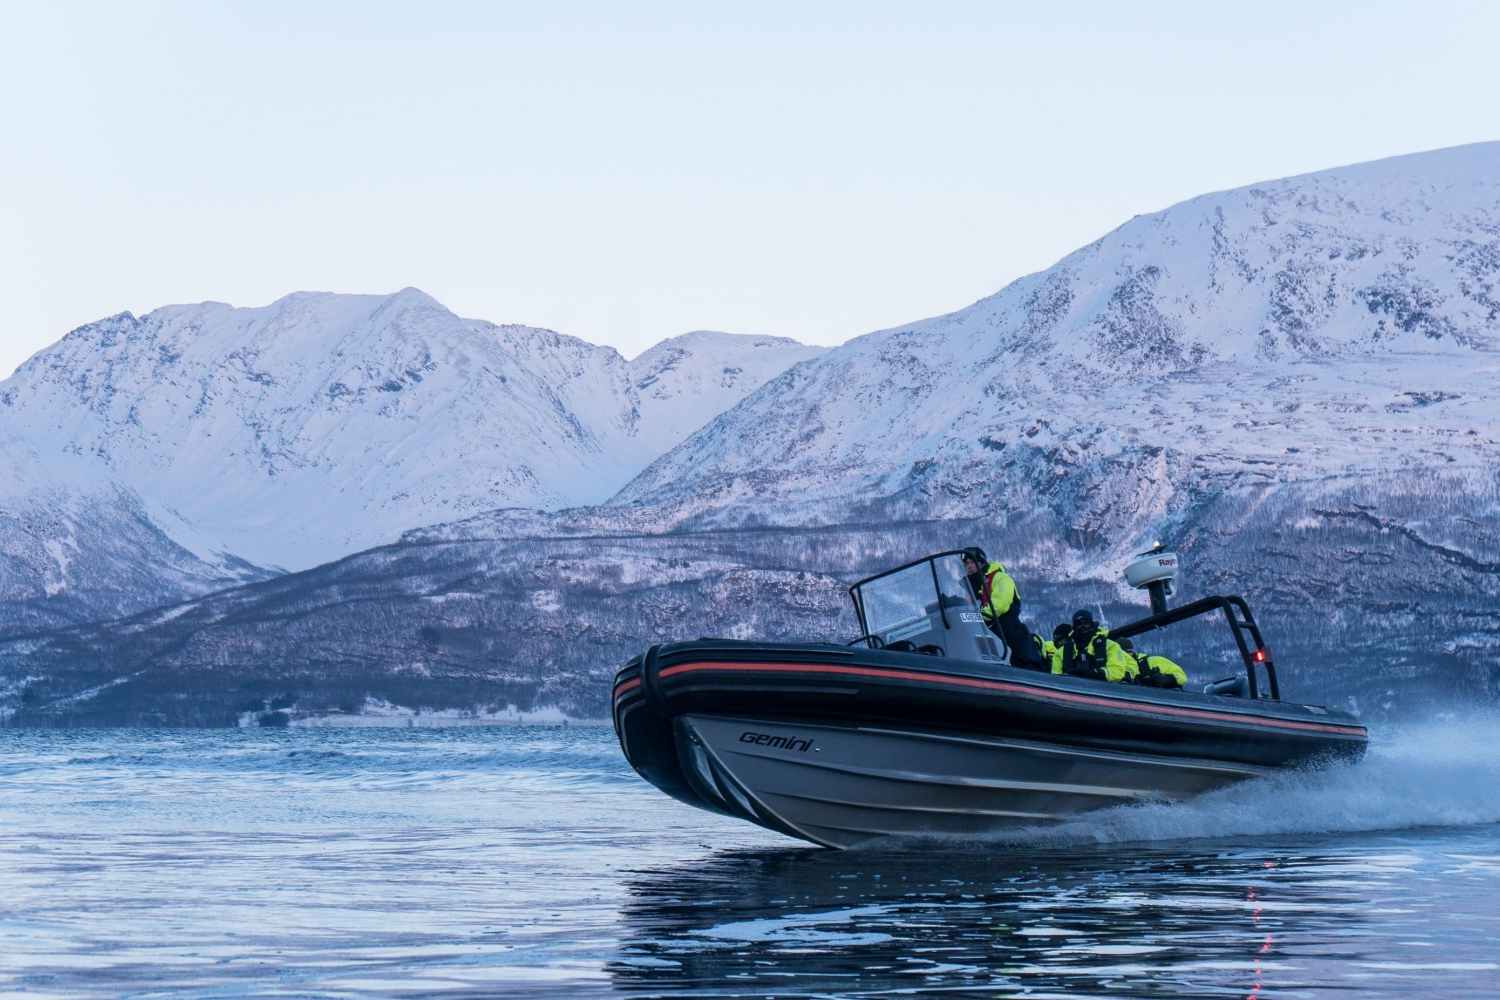 RIB Boat drving fast in fjord